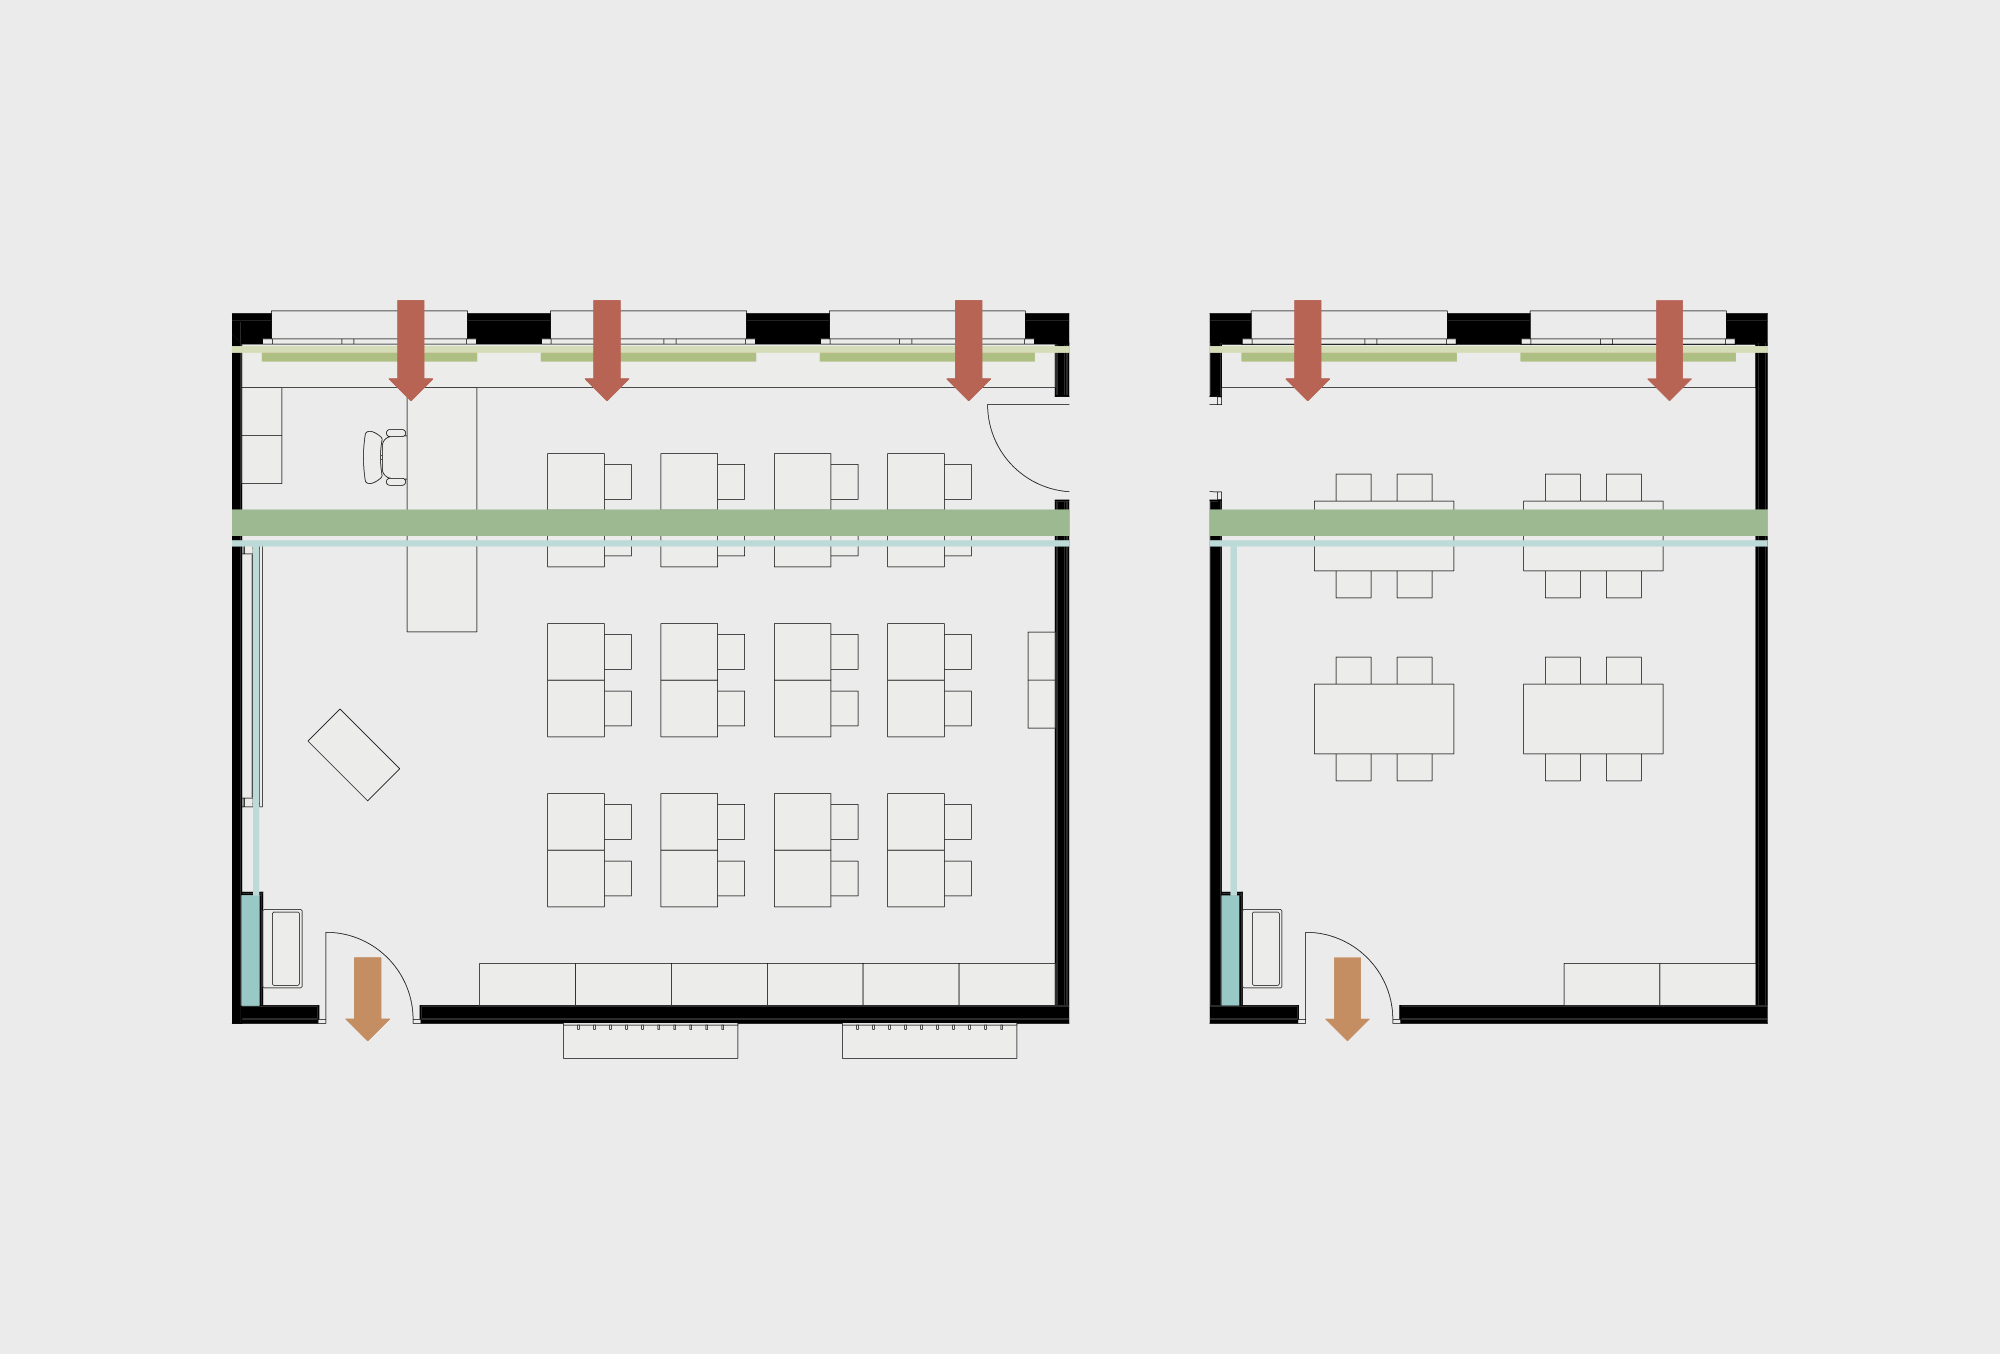 Salles principales de l’école modulaire en bois avec un concept bien pensé pour les installations techniques